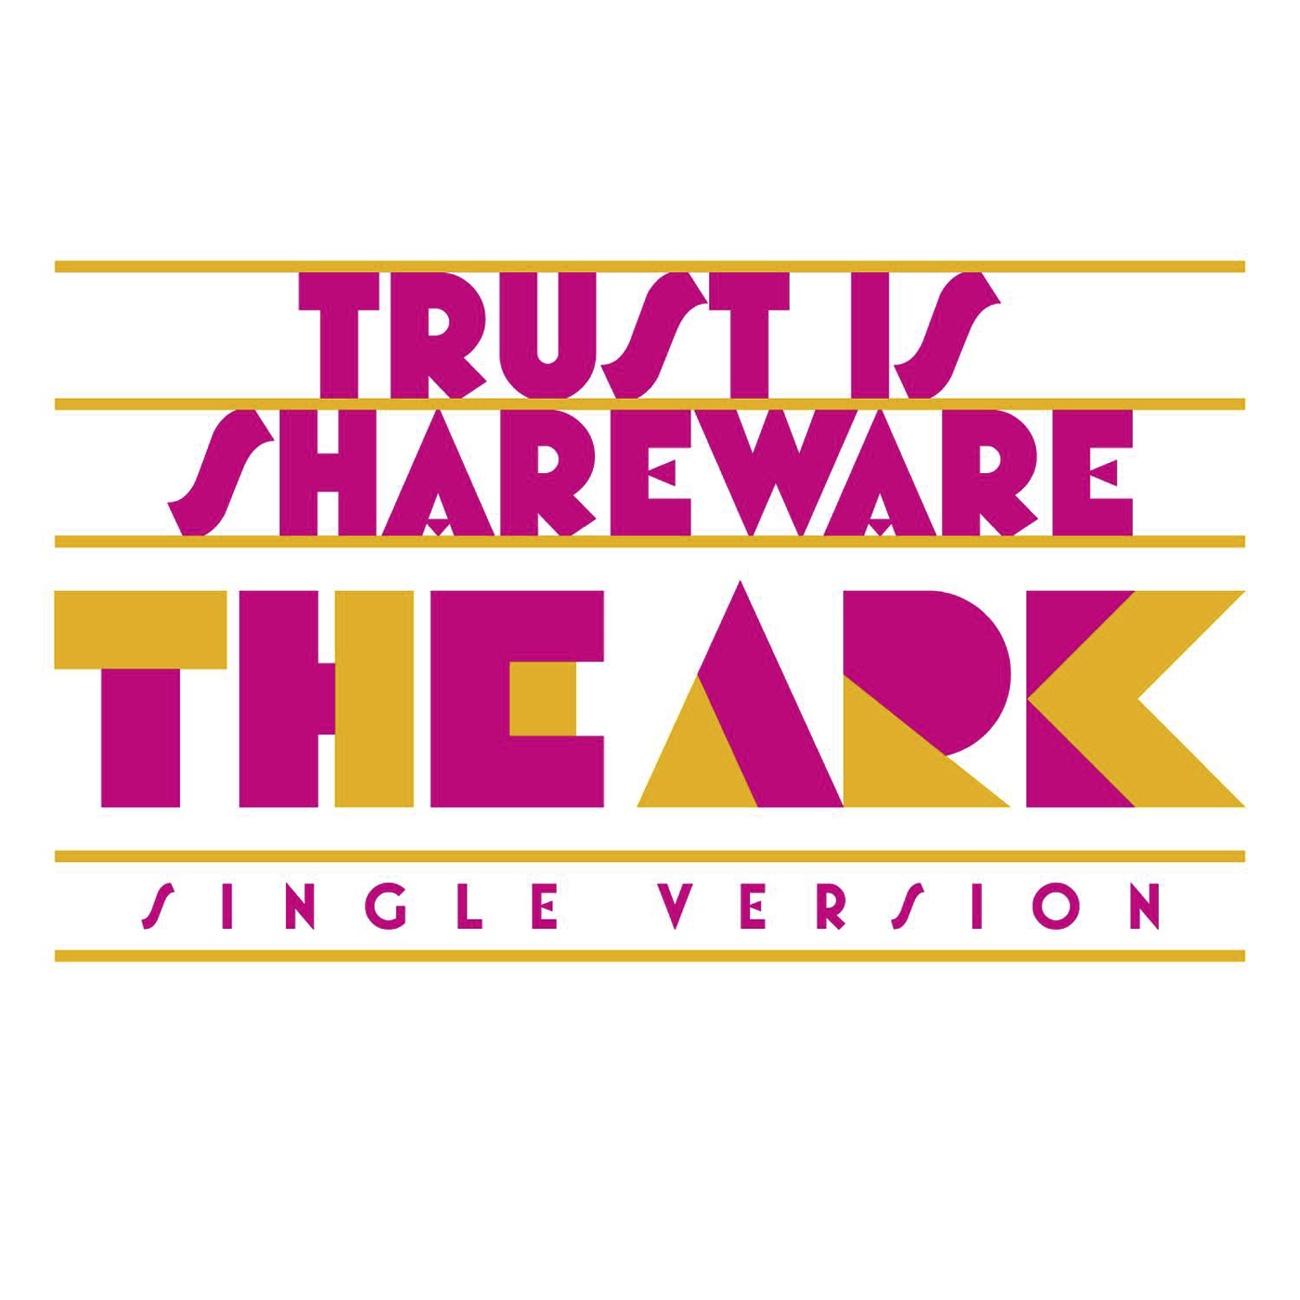 Trust Is Shareware